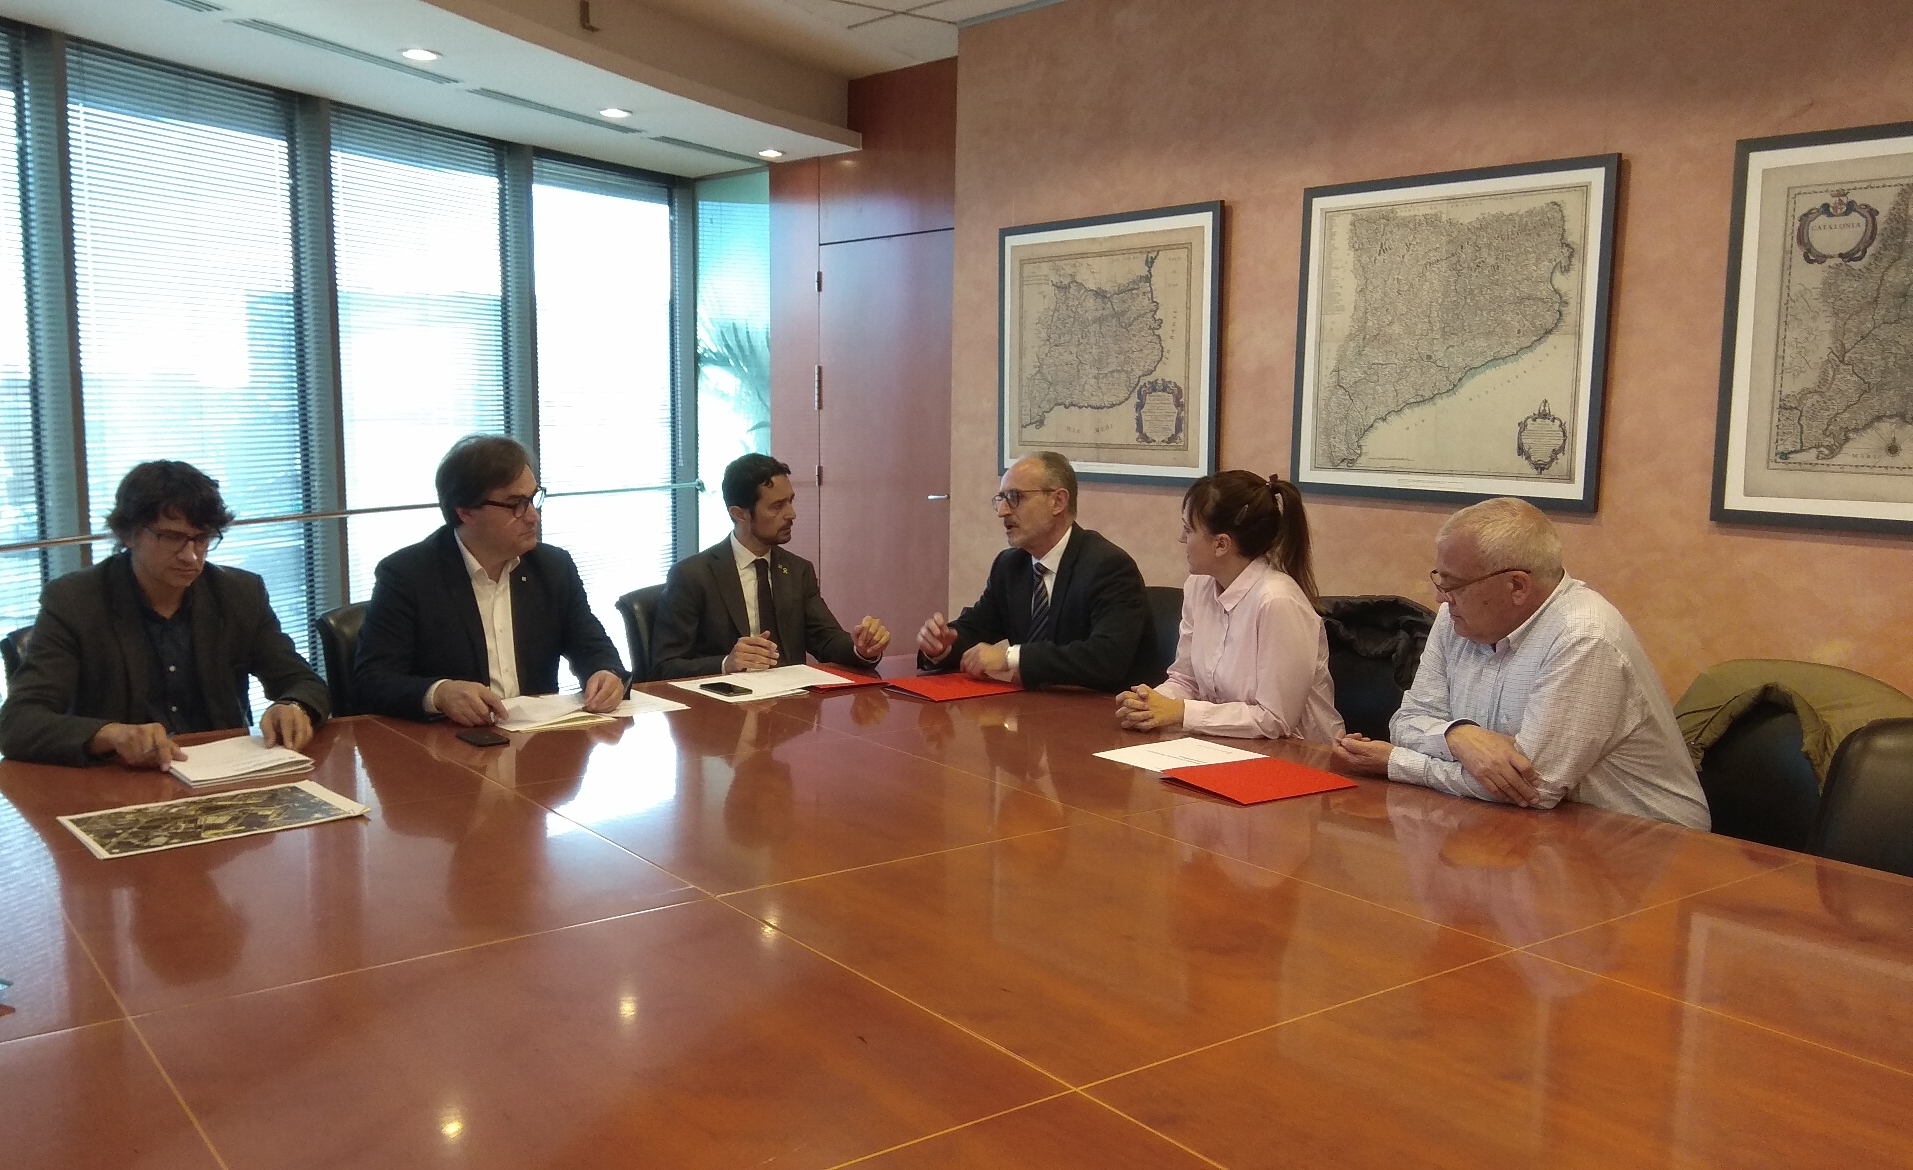  El conseller Calvet i l’alcalde Josep Monràs acorden la construcció de 100 pisos socials a Mollet 